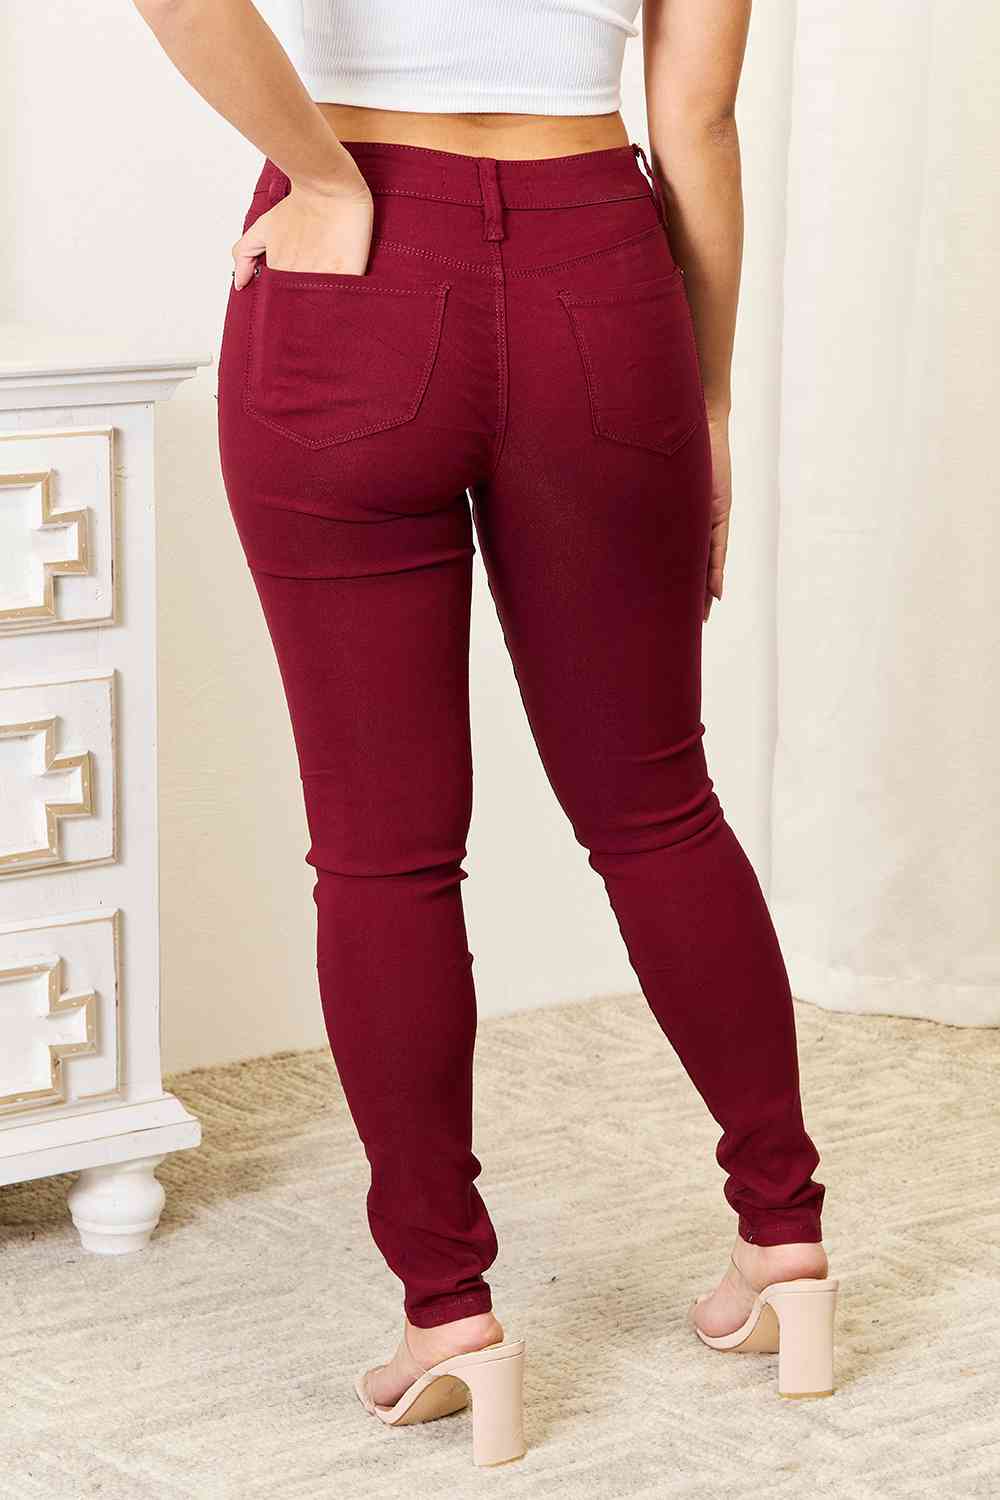 YMI Jeanswear Skinny Jeans with Pockets - By Baano